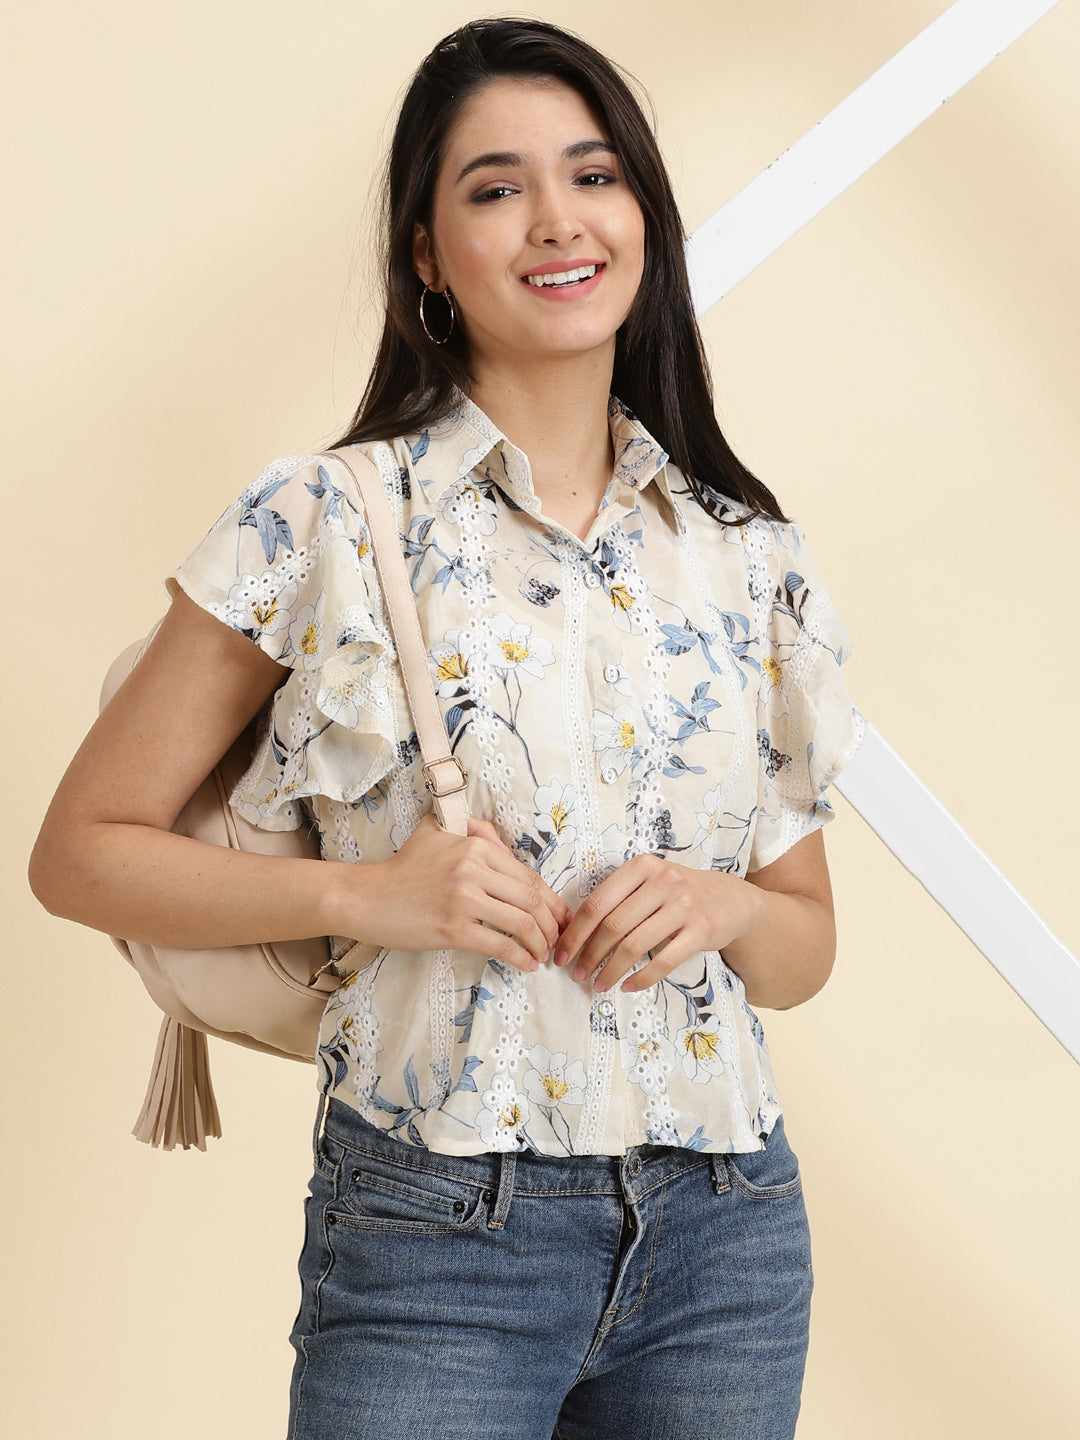 Women's Cream Printed Shirt Style Top